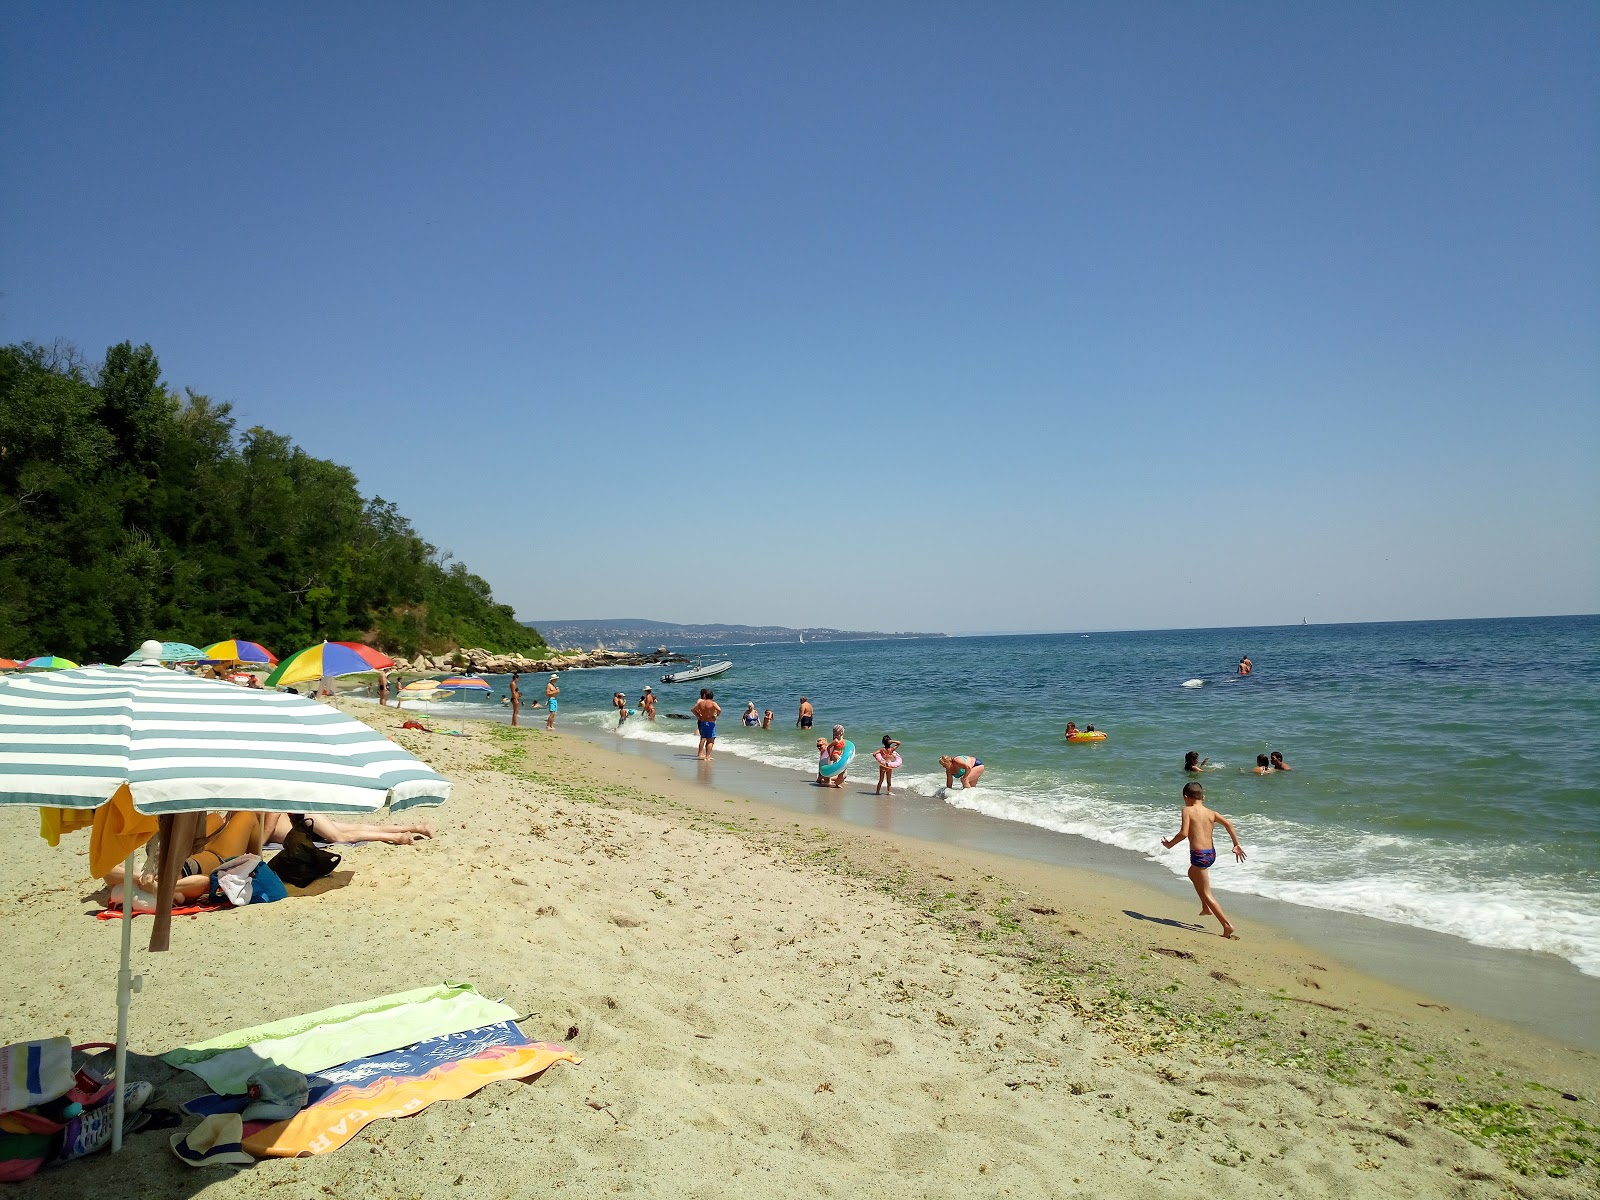 Plyazh Galata'in fotoğrafı geniş plaj ile birlikte